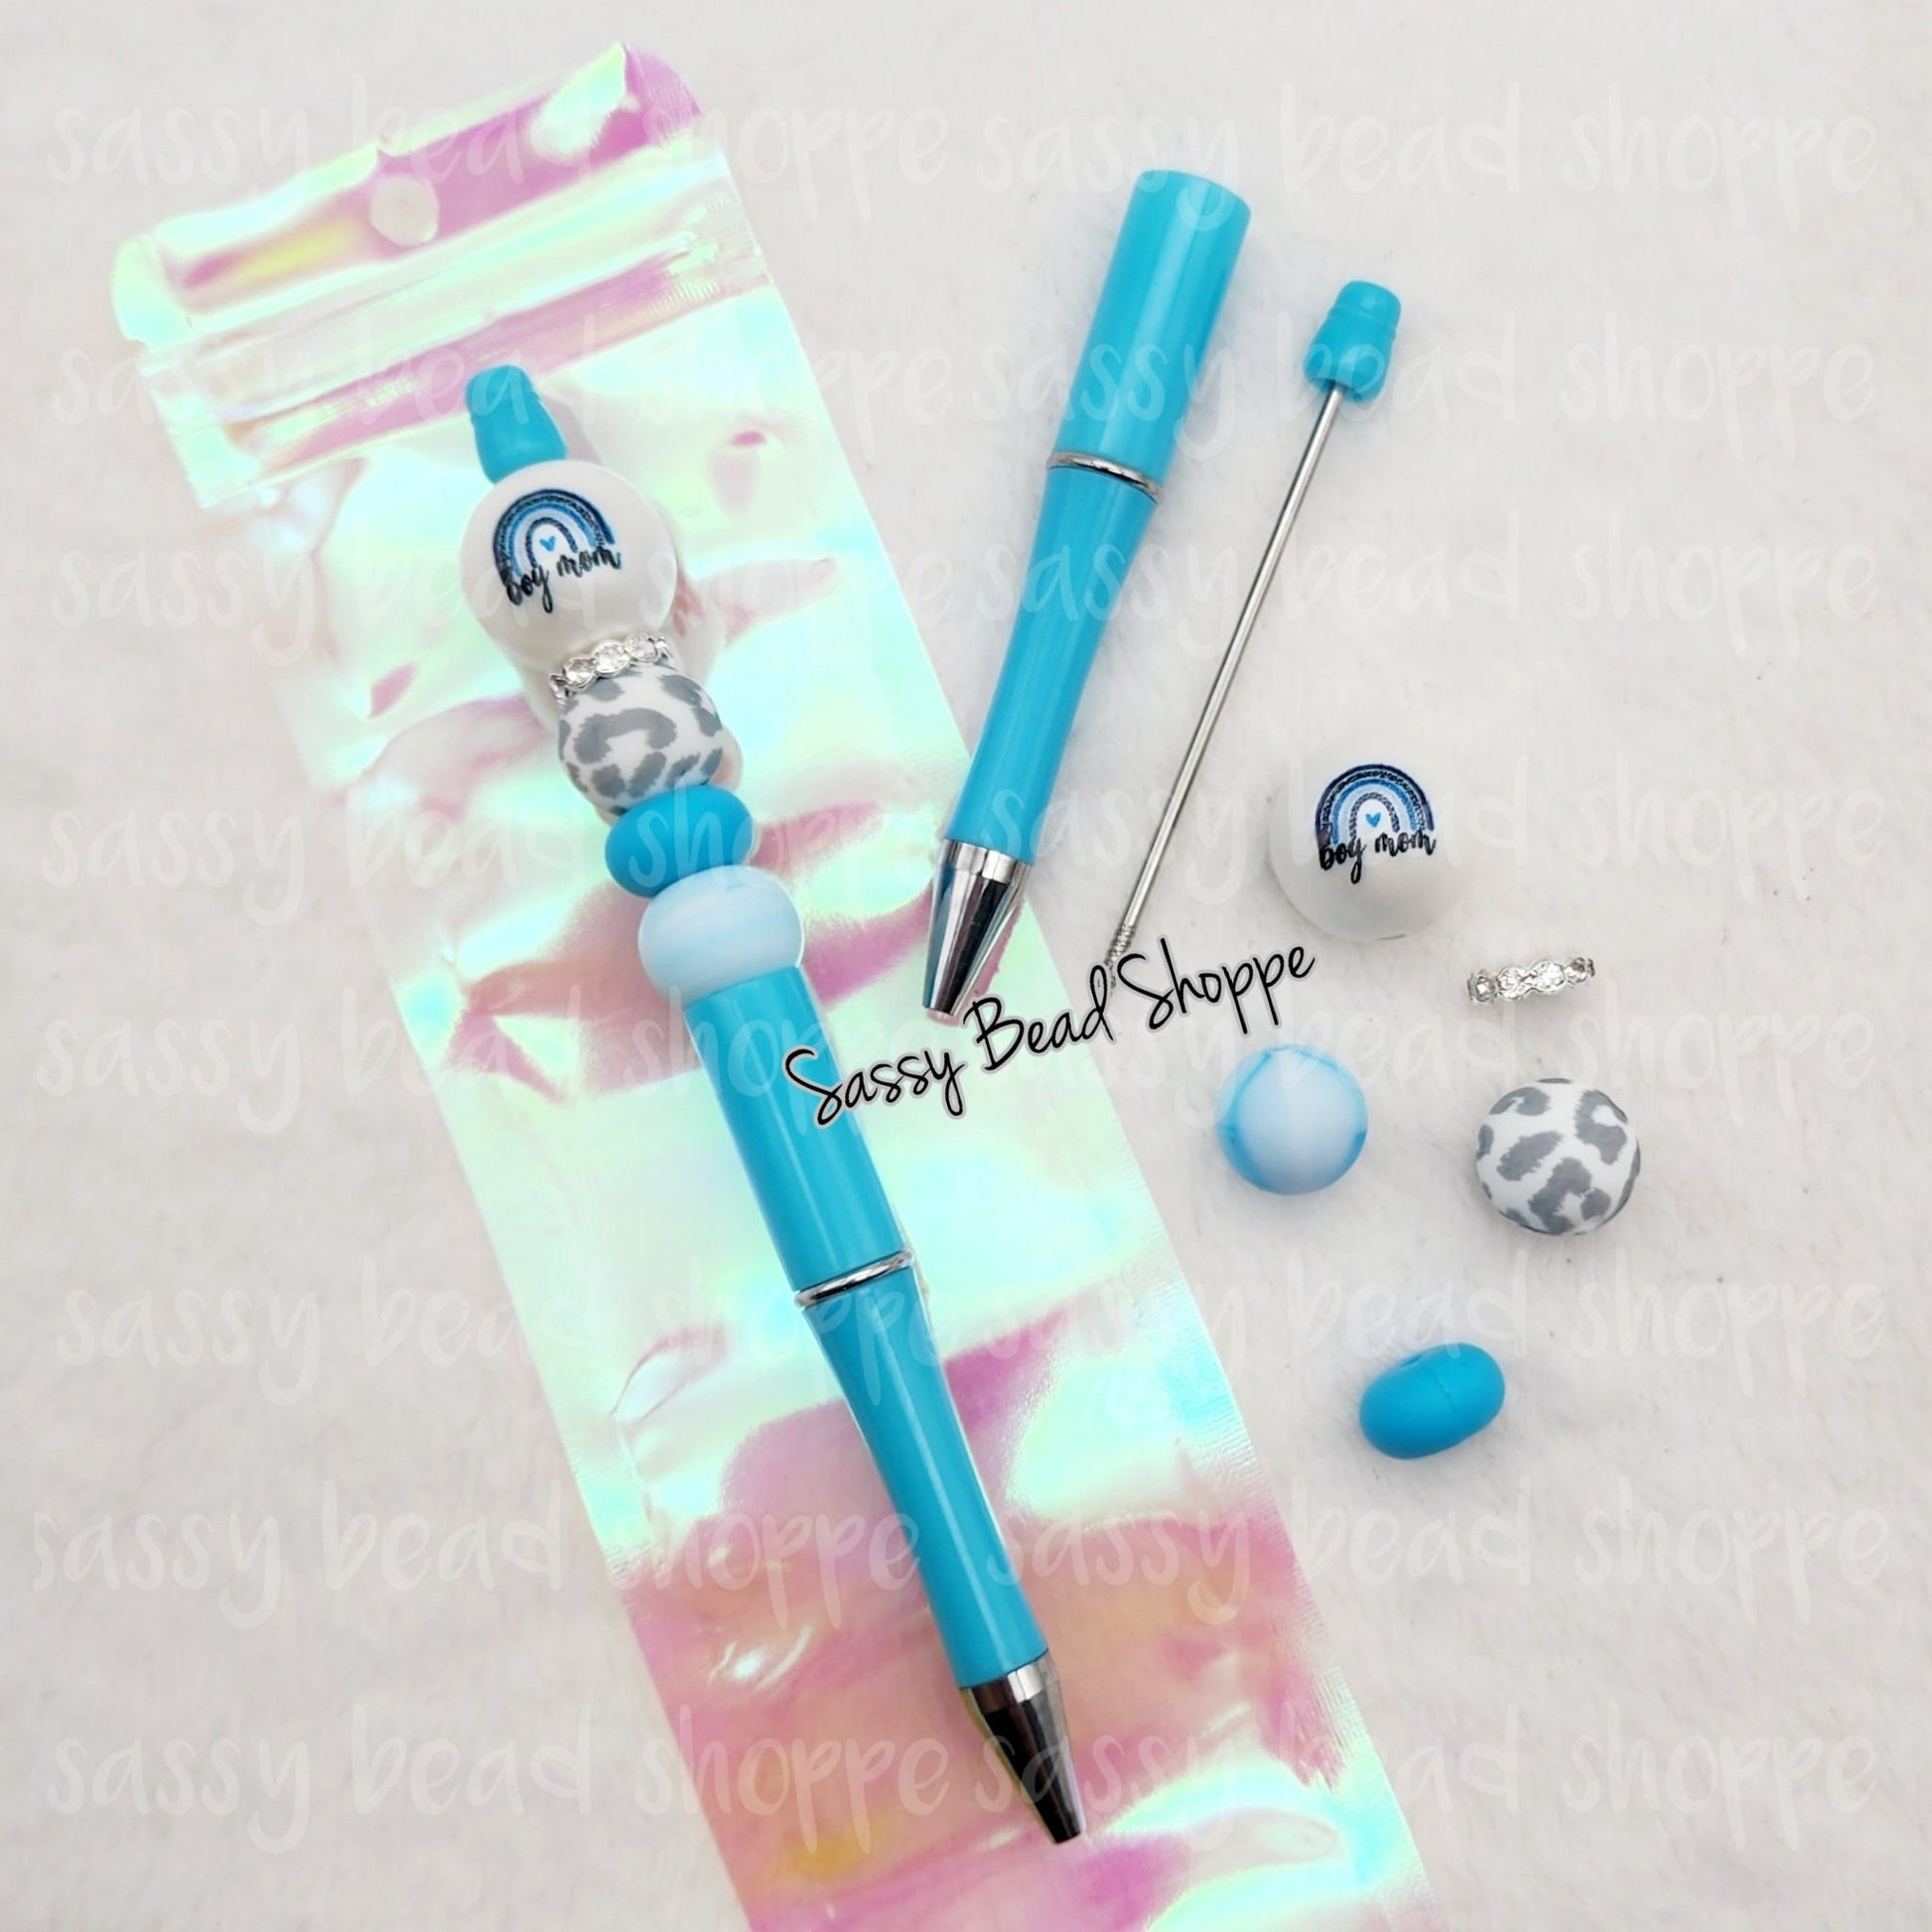 Boy Mama Beadable Pen Kit, Mom Life DIY Bubblegum Bead PLASTIC Pen Kit, Beadable Pens, Bubblegum Beads, Beaded Pens, Pen Beads, Focal Beads